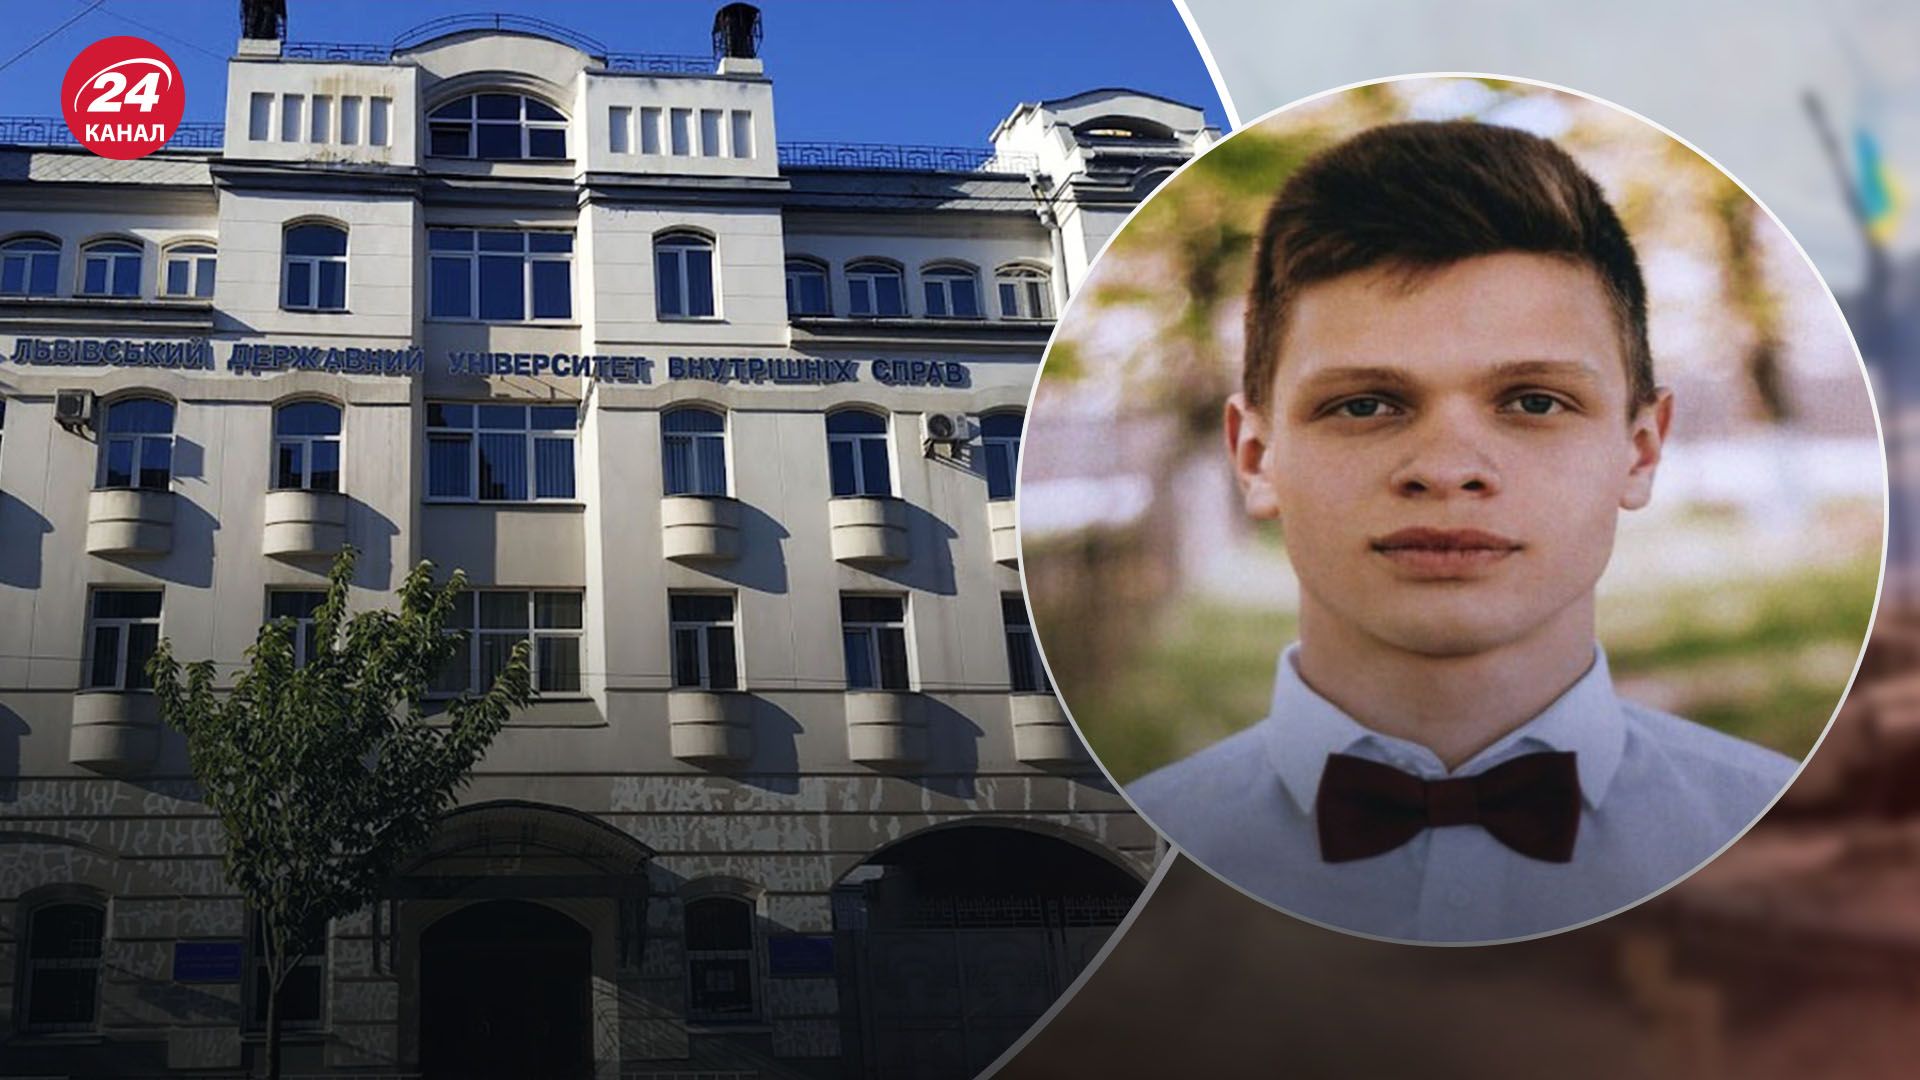 Смерть 18-летнего курсанта во Львове: командир университета прокомментировал ситуацию - 24 Канал